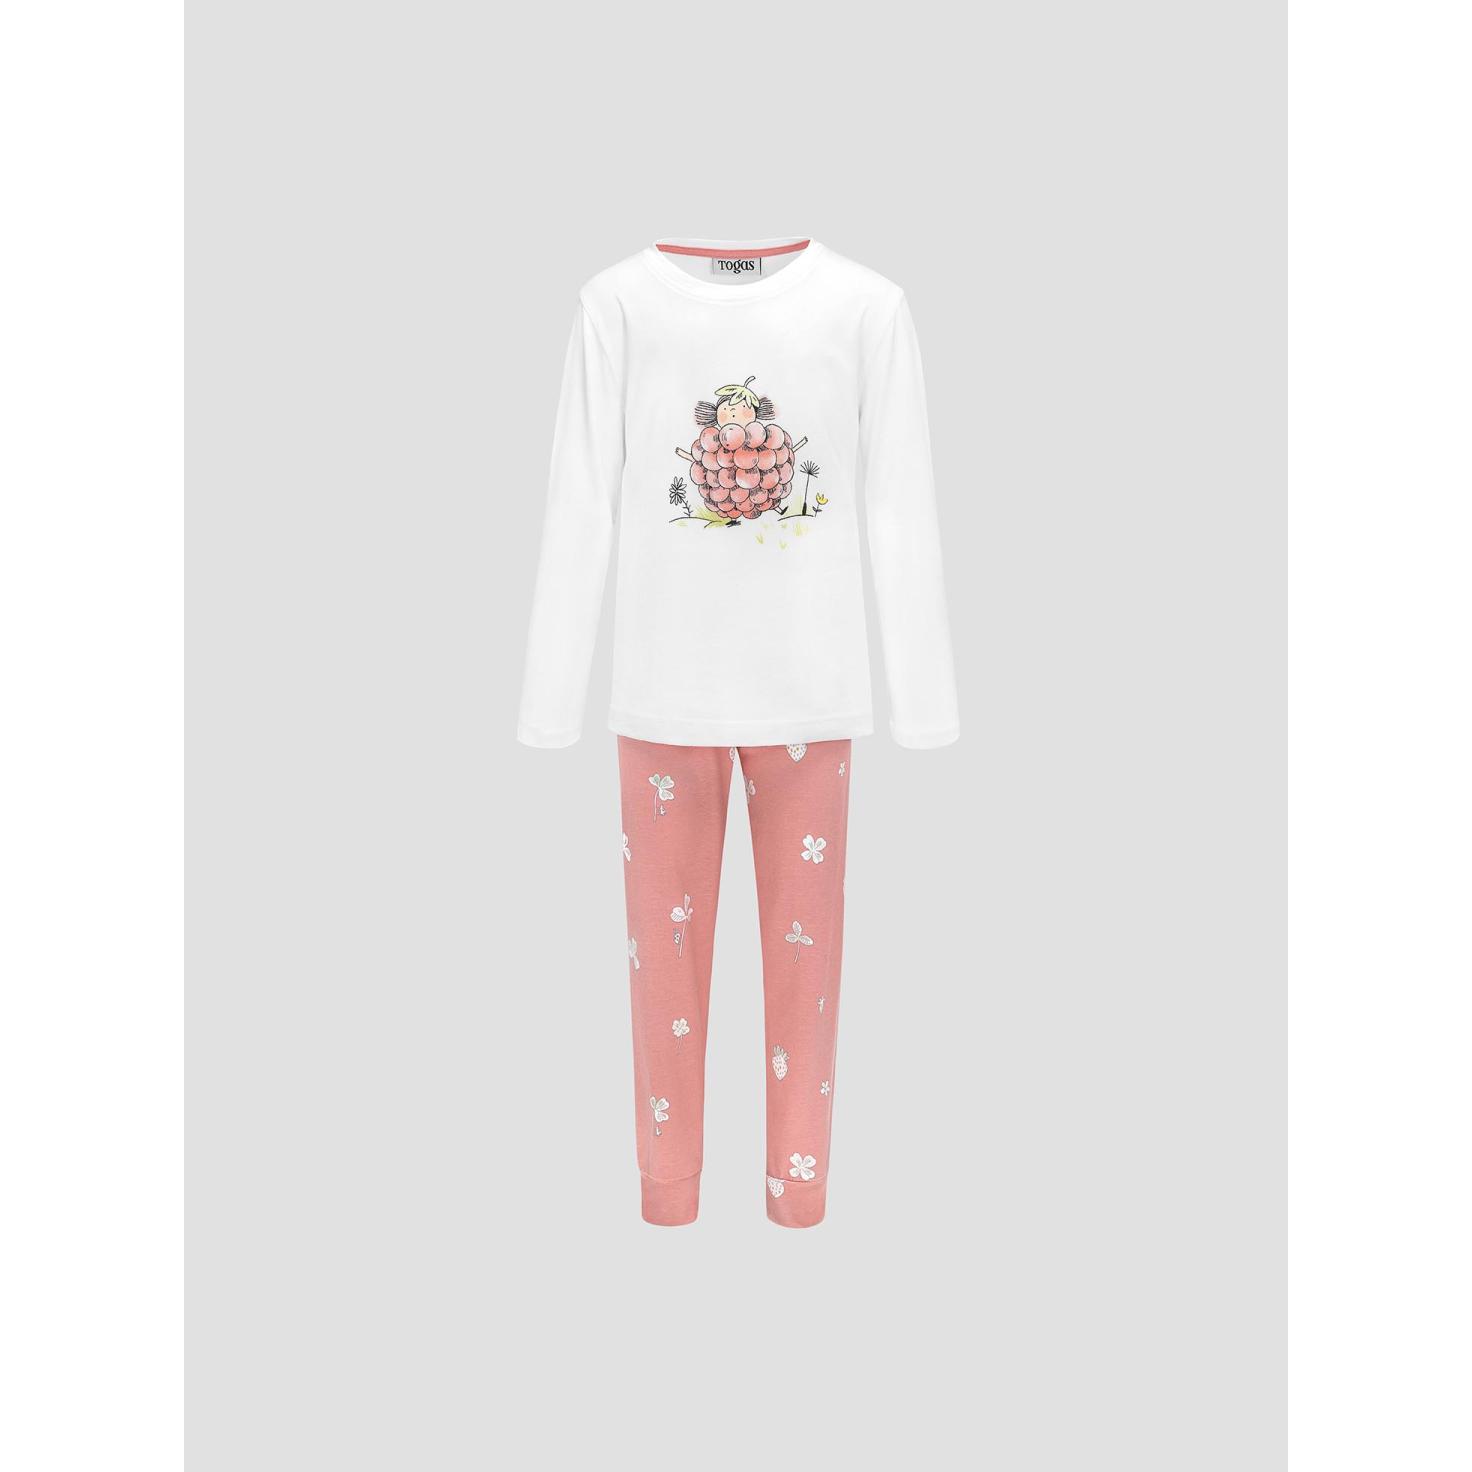 Пижама для девочек Kids by togas Стробби бело-розовый 128-134 см жен пижама клубничный зайка розовый р 54